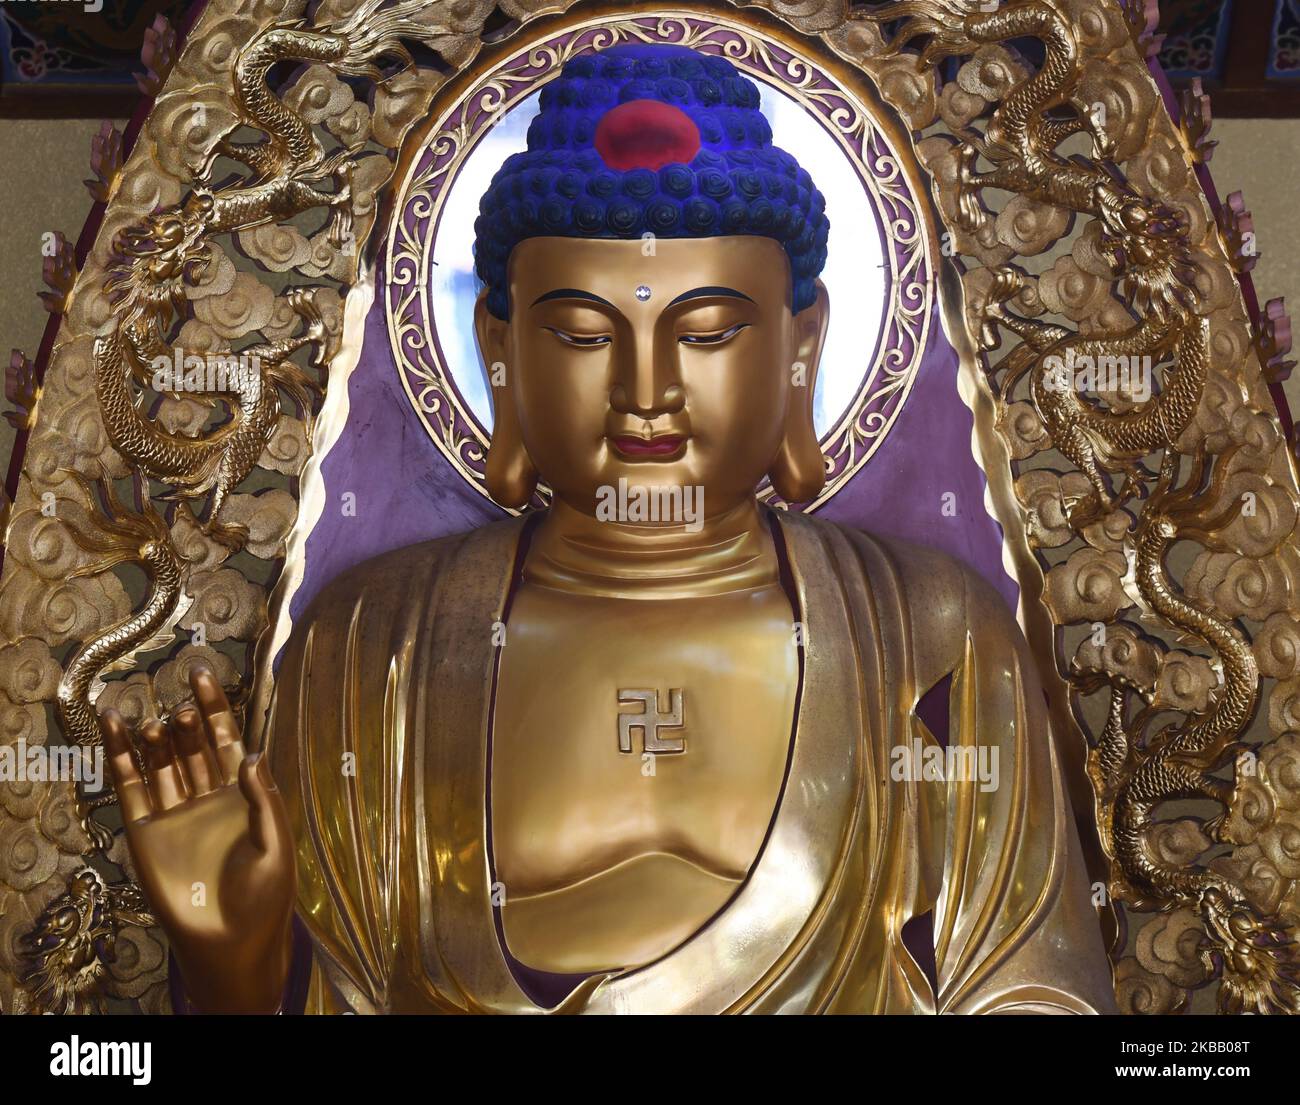 Vue sur la statue de Budda avec un symbole de la croix gammée, vue à l'intérieur du temple de Putuo. La swastika est considérée comme symbolisant les empreintes du Bouddha. C'est un symbole aniconique pour le Bouddha dans de nombreuses parties de l'Asie. La forme symbolise le cyclisme éternel, un thème trouvé dans la doctrine samsara du bouddhisme. Vendredi, 20 octobre 2019, dans la zone pittoresque de Nongla, comté de Mashan, région de Guangxi, Chine. (Photo par Artur Widak/NurPhoto) Banque D'Images